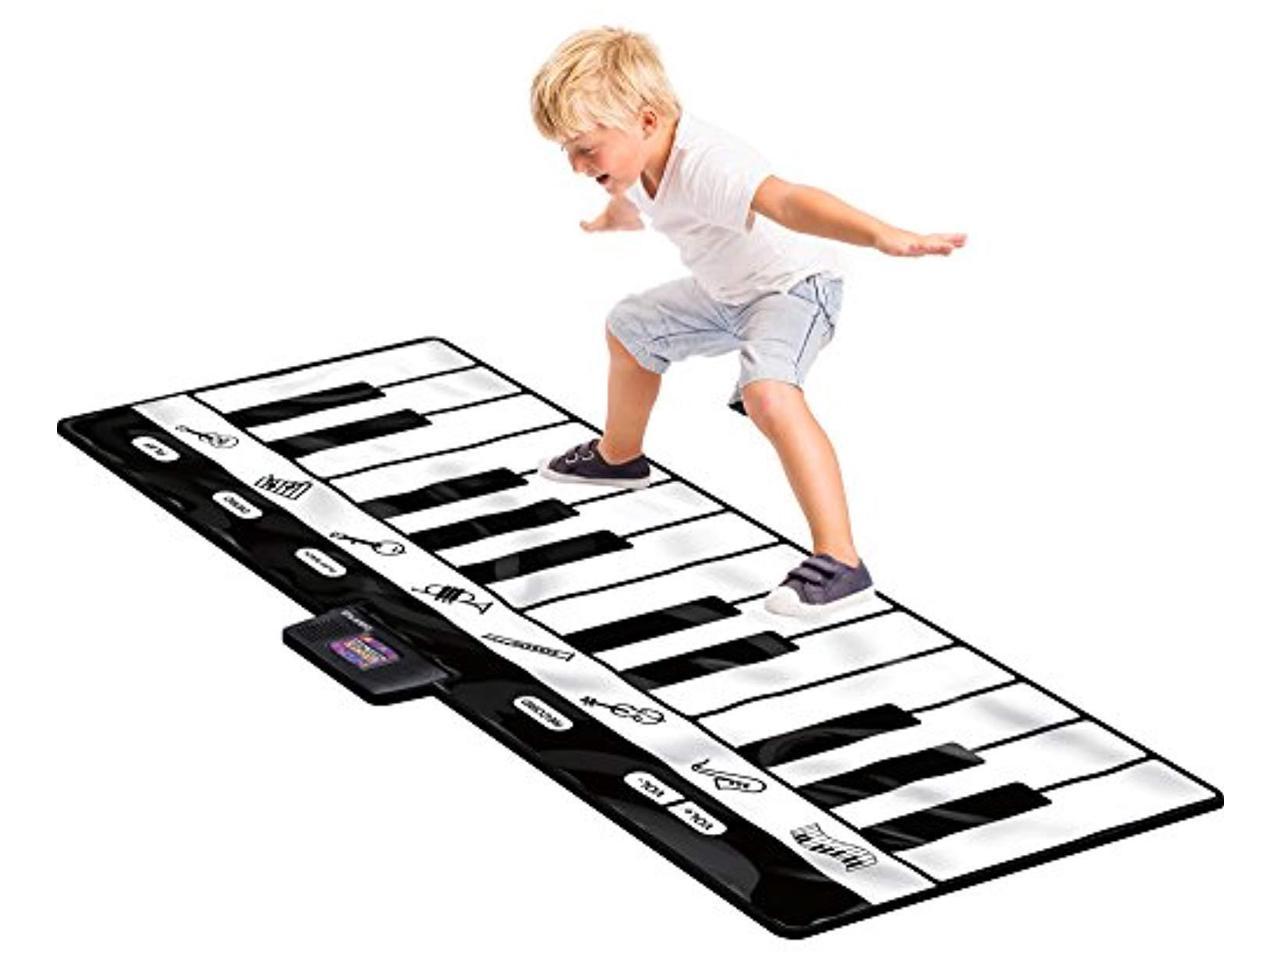 Click N Play Gigantic Keyboard Play Mat 24 Keys Piano Mat 8 Selectable Musical Instruments Play Record Playback Demo Mo Newegg Com